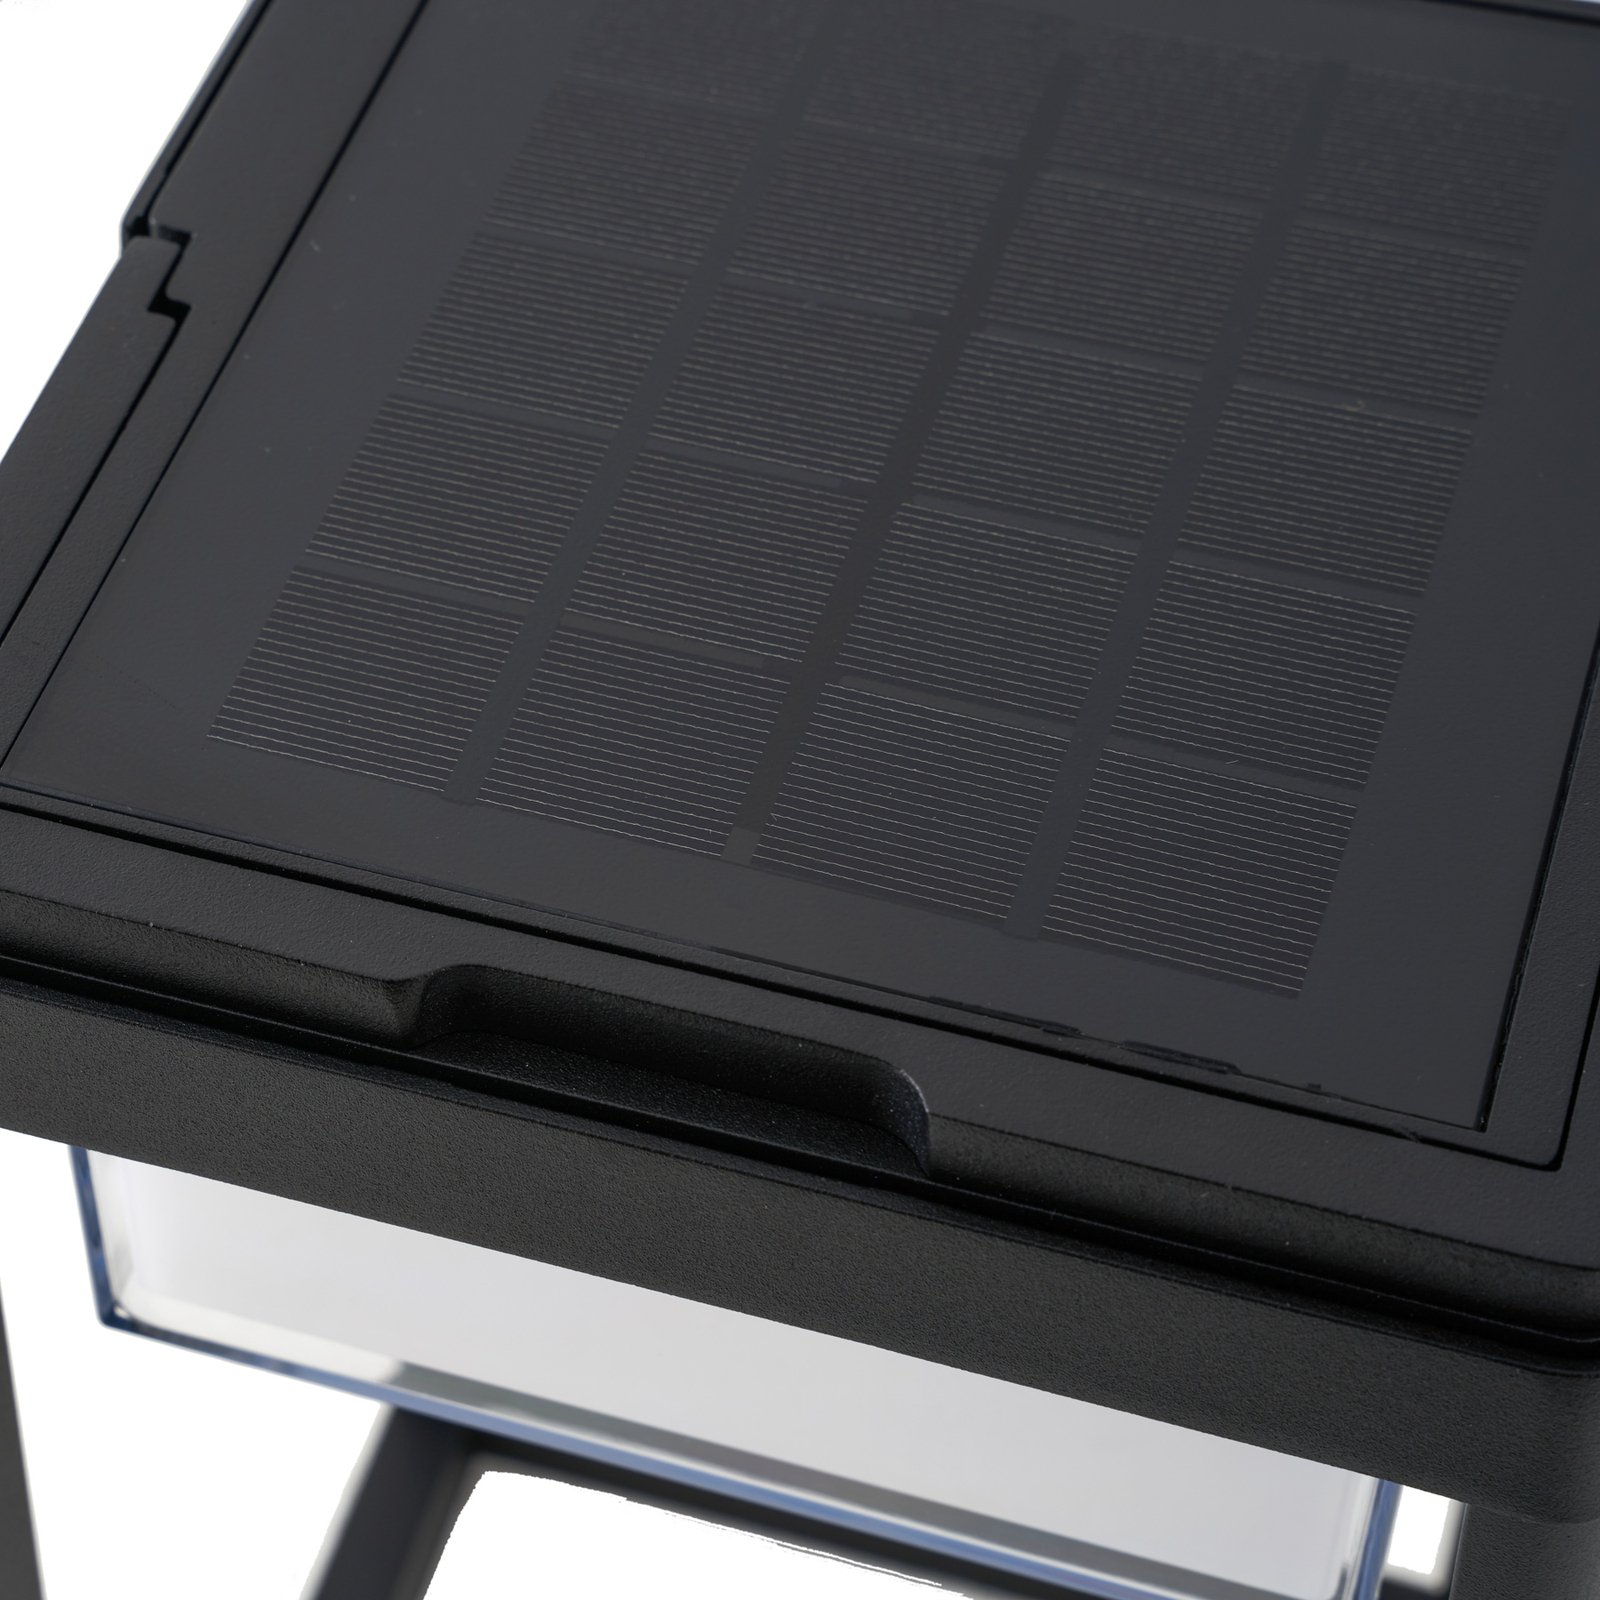 Lucande LED solar tafellamp Tilena, hoekig, zwart, dimbaar